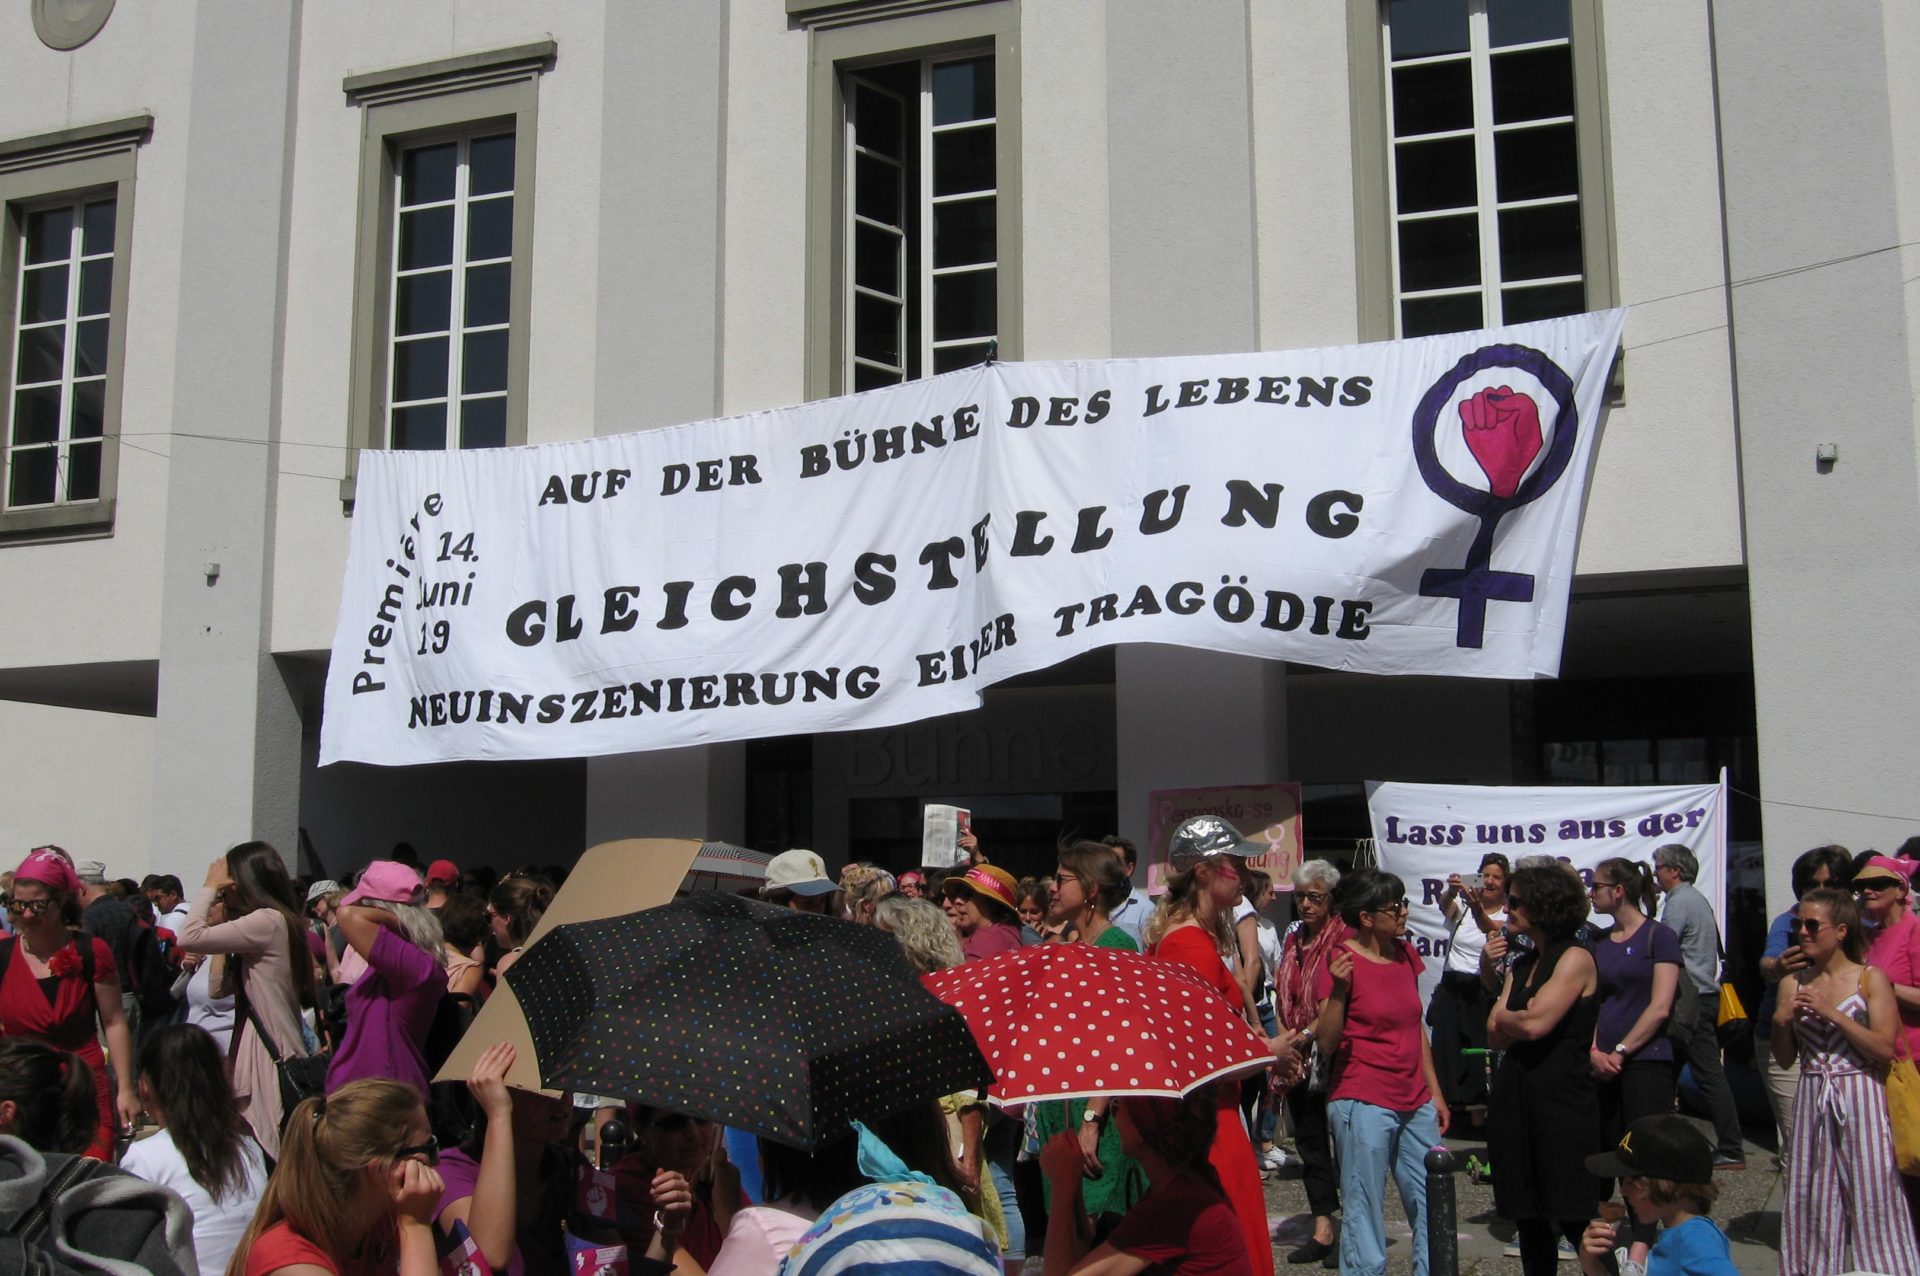 Frauenstreik 2019 in Luzern
©Elisabeth Aeberli